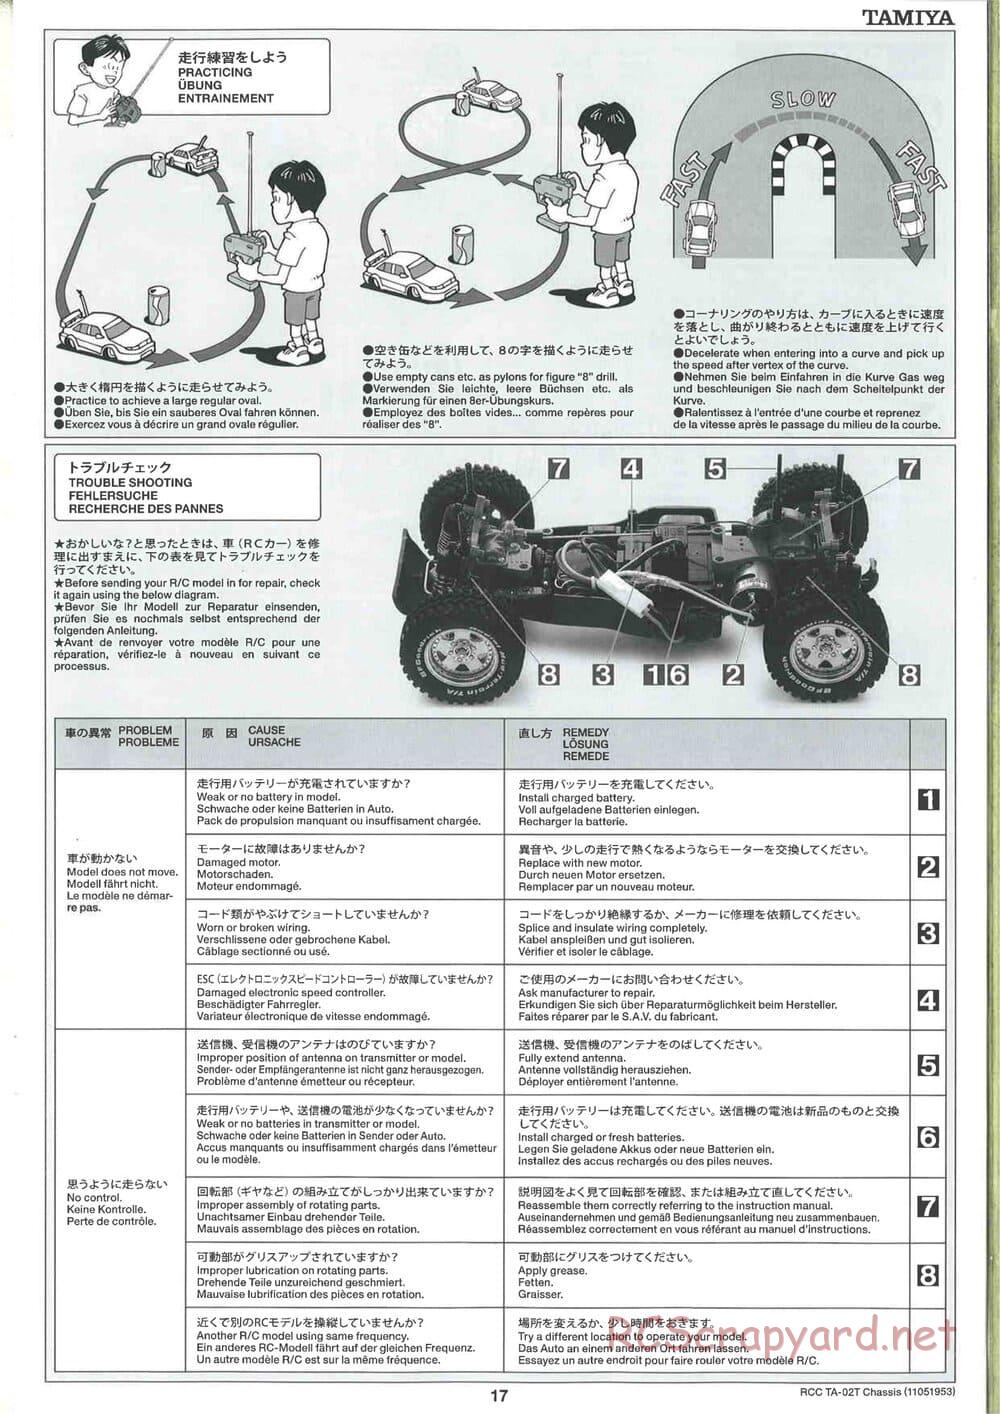 Tamiya - TA-02T Chassis - Manual - Page 17